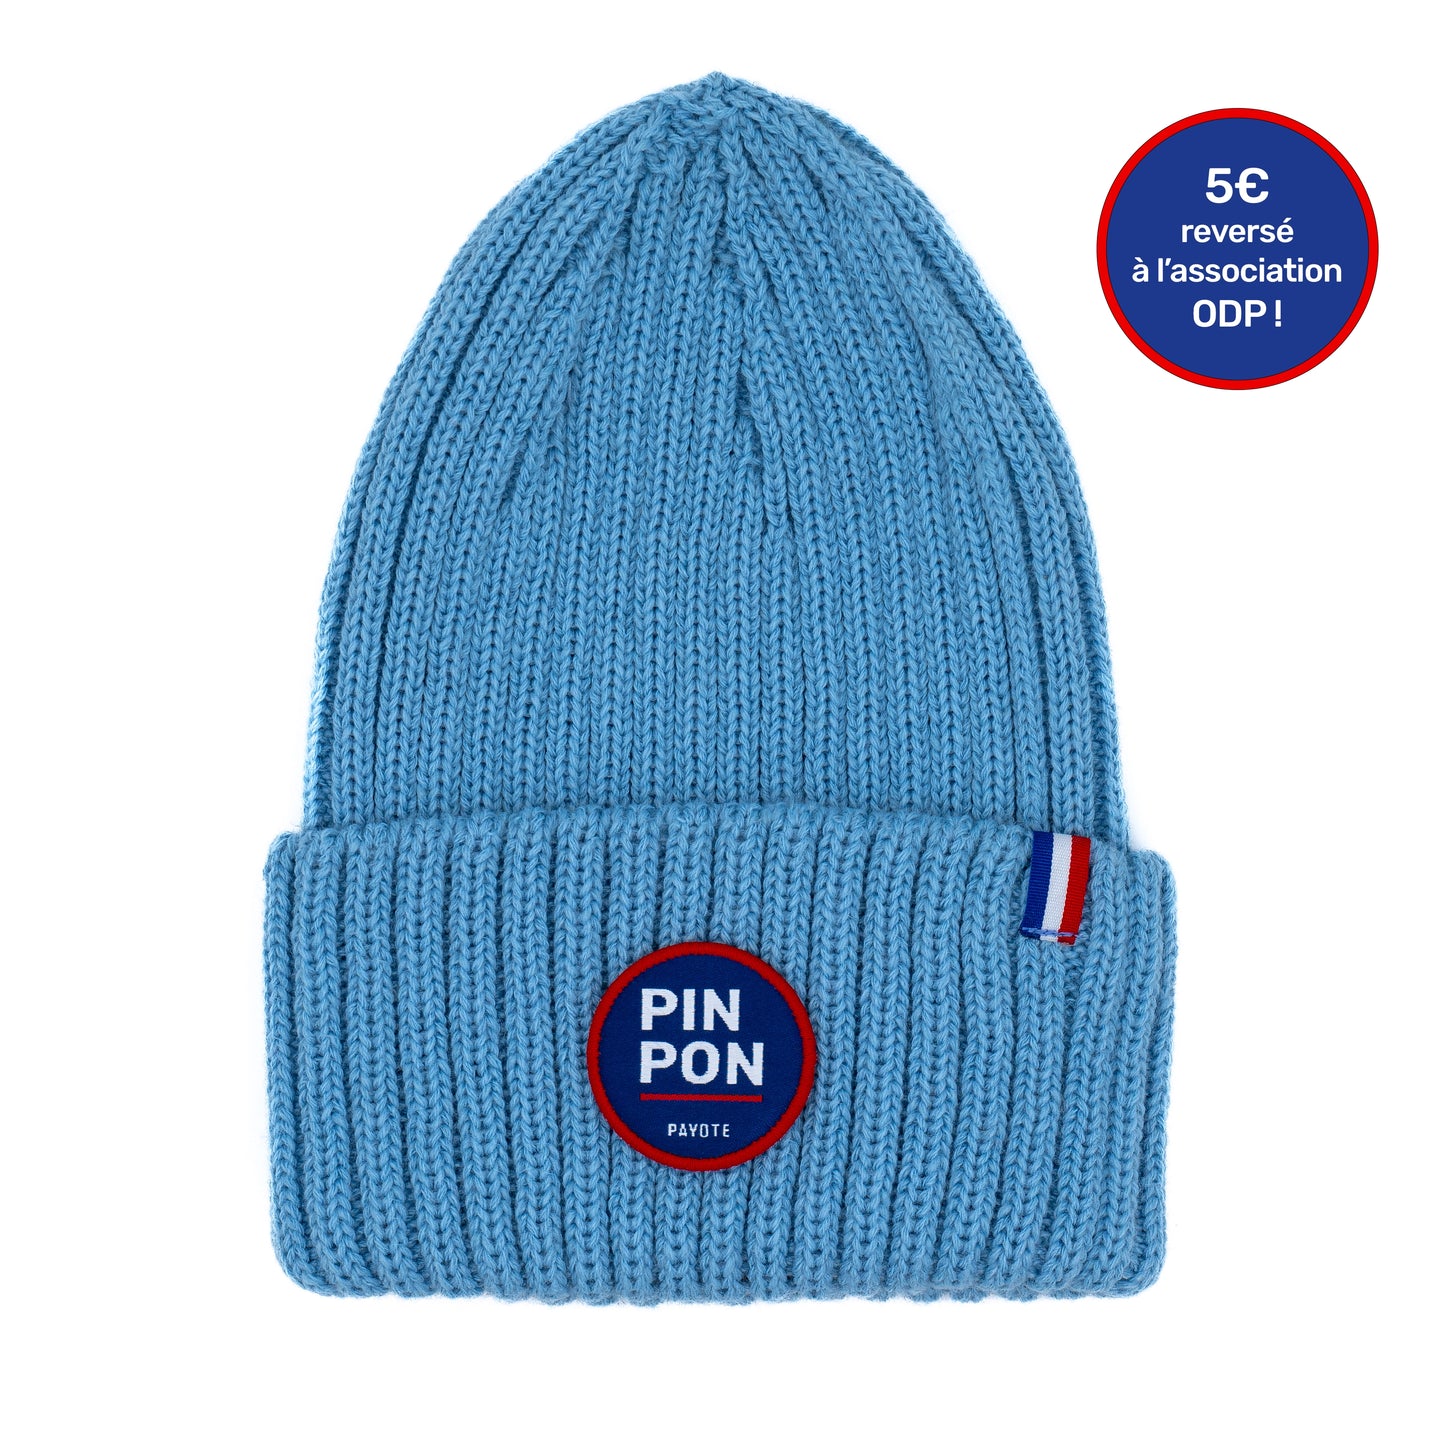 Bonnet bleu ciel fabriqué en France "Pin Pon"